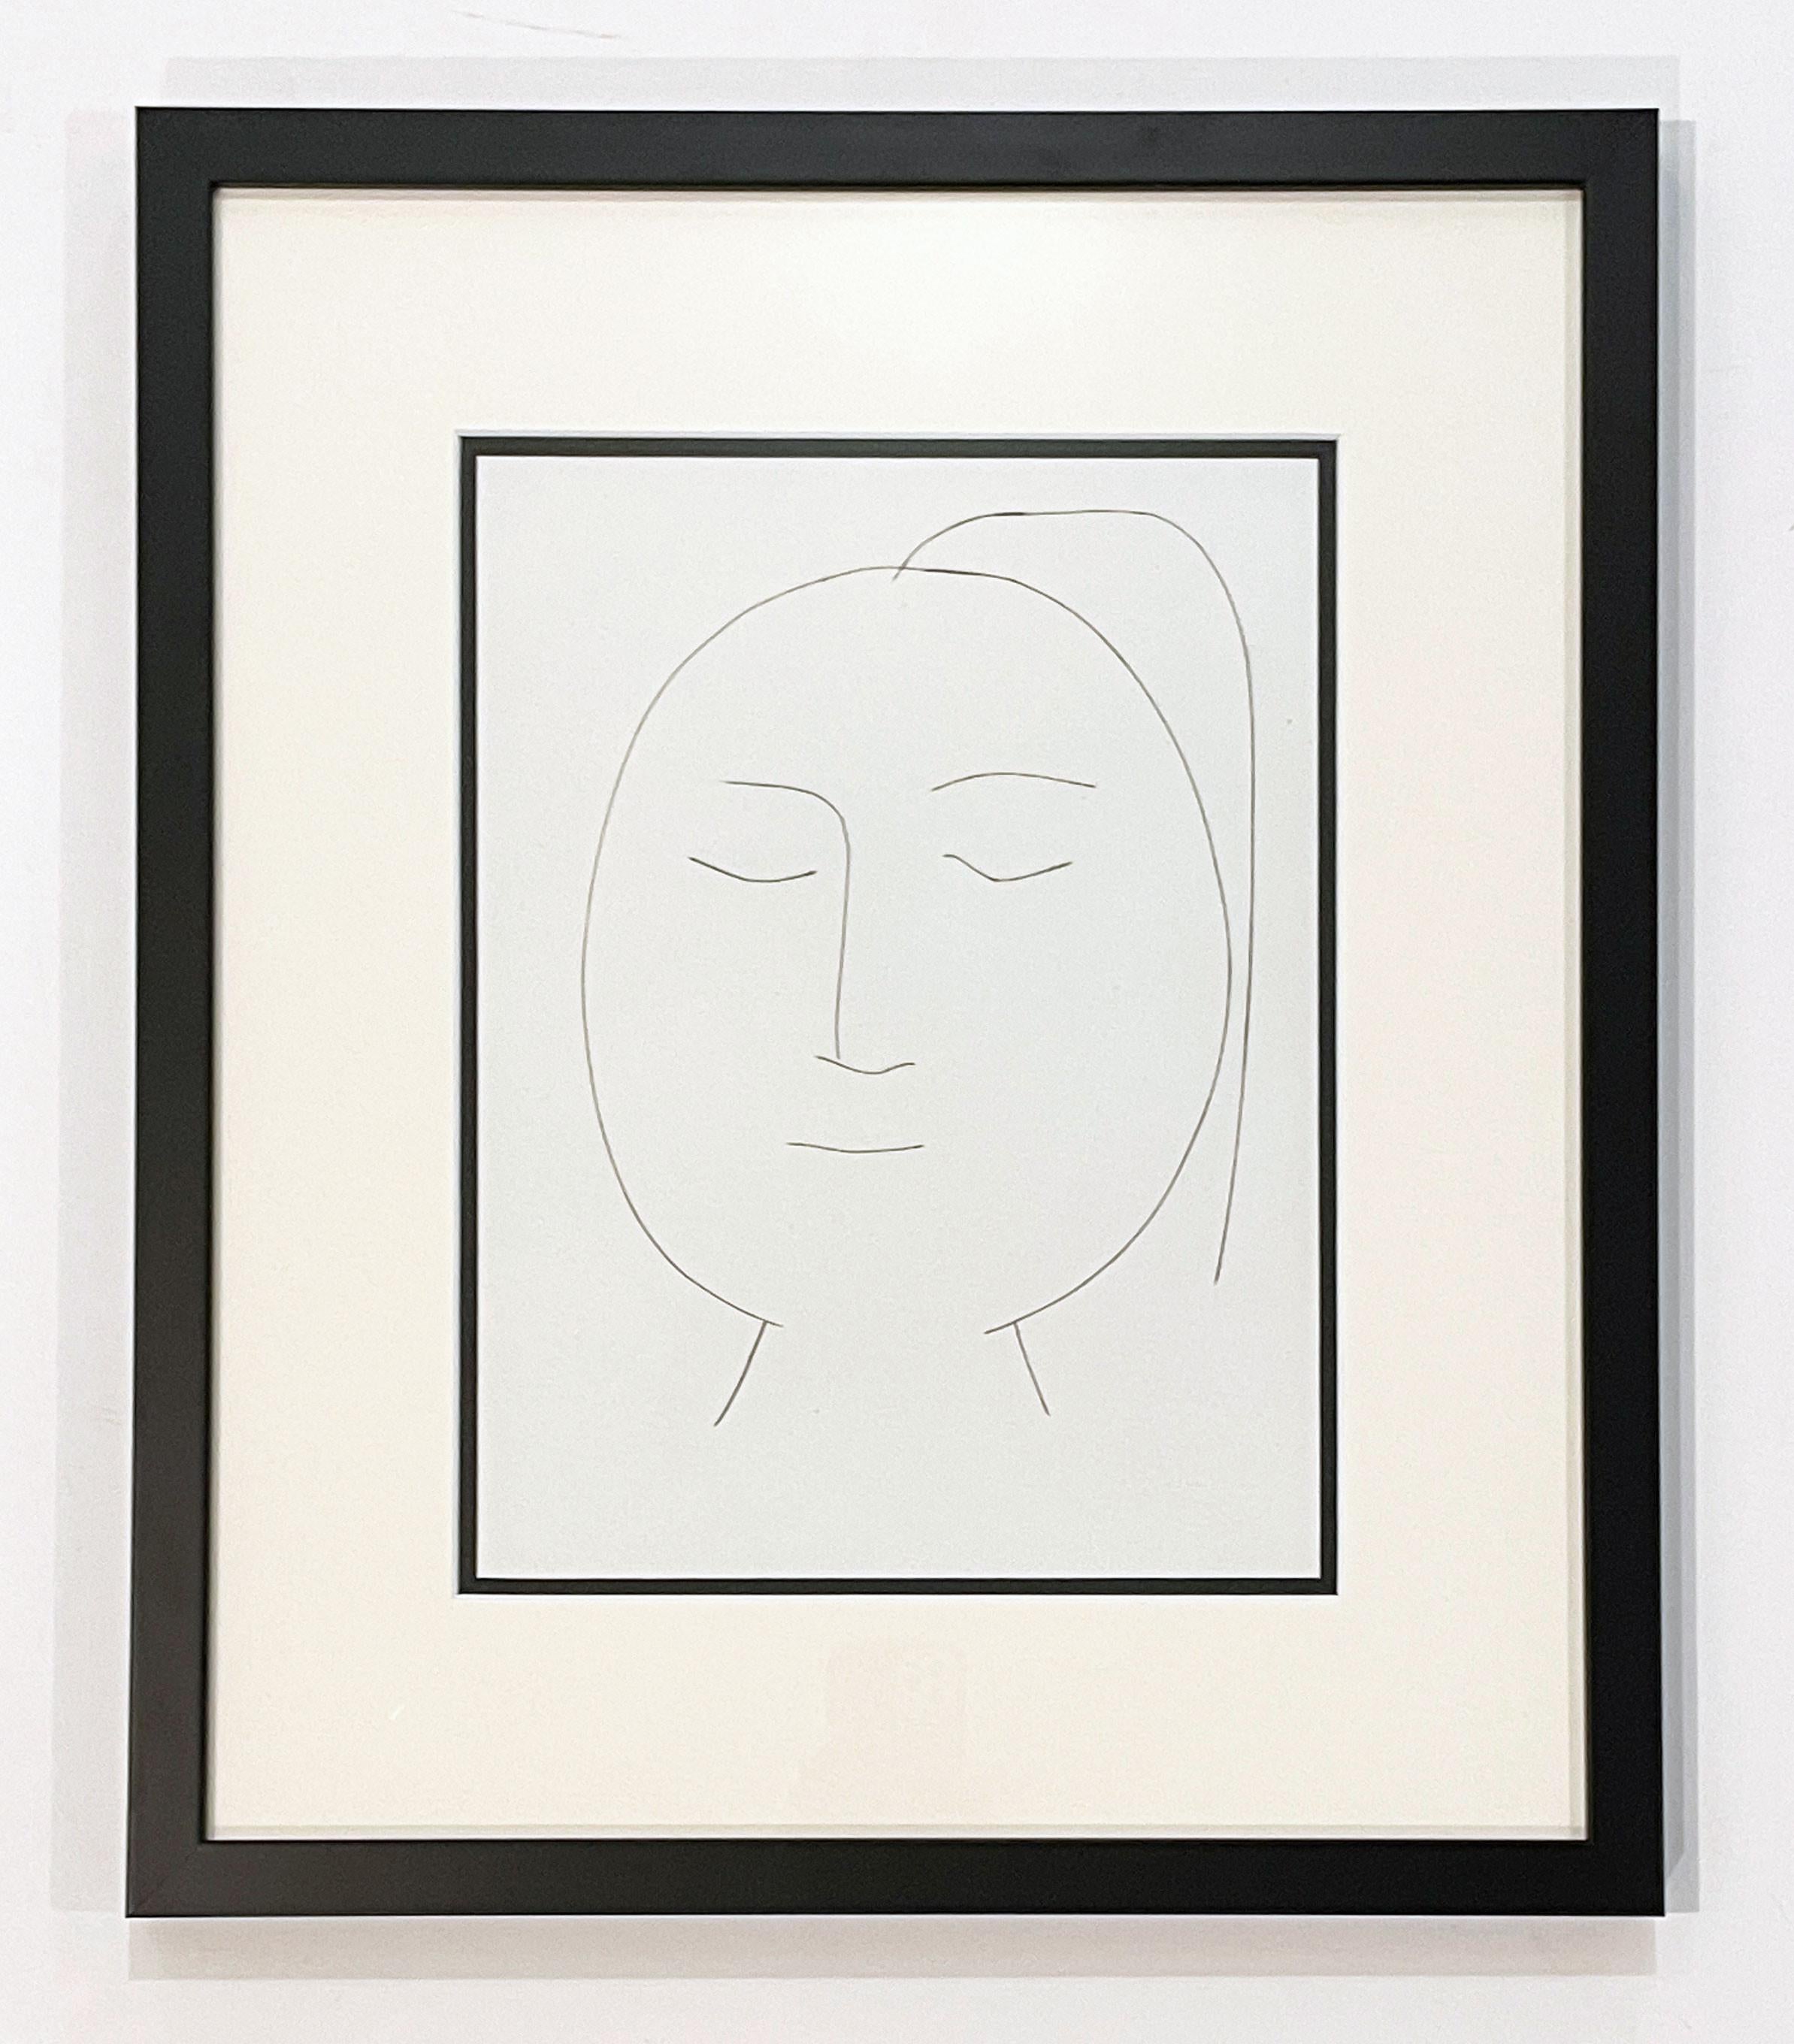 Ovaler Kopf einer Frau mit Haar (Teller XIX), von Carmen – Print von Pablo Picasso